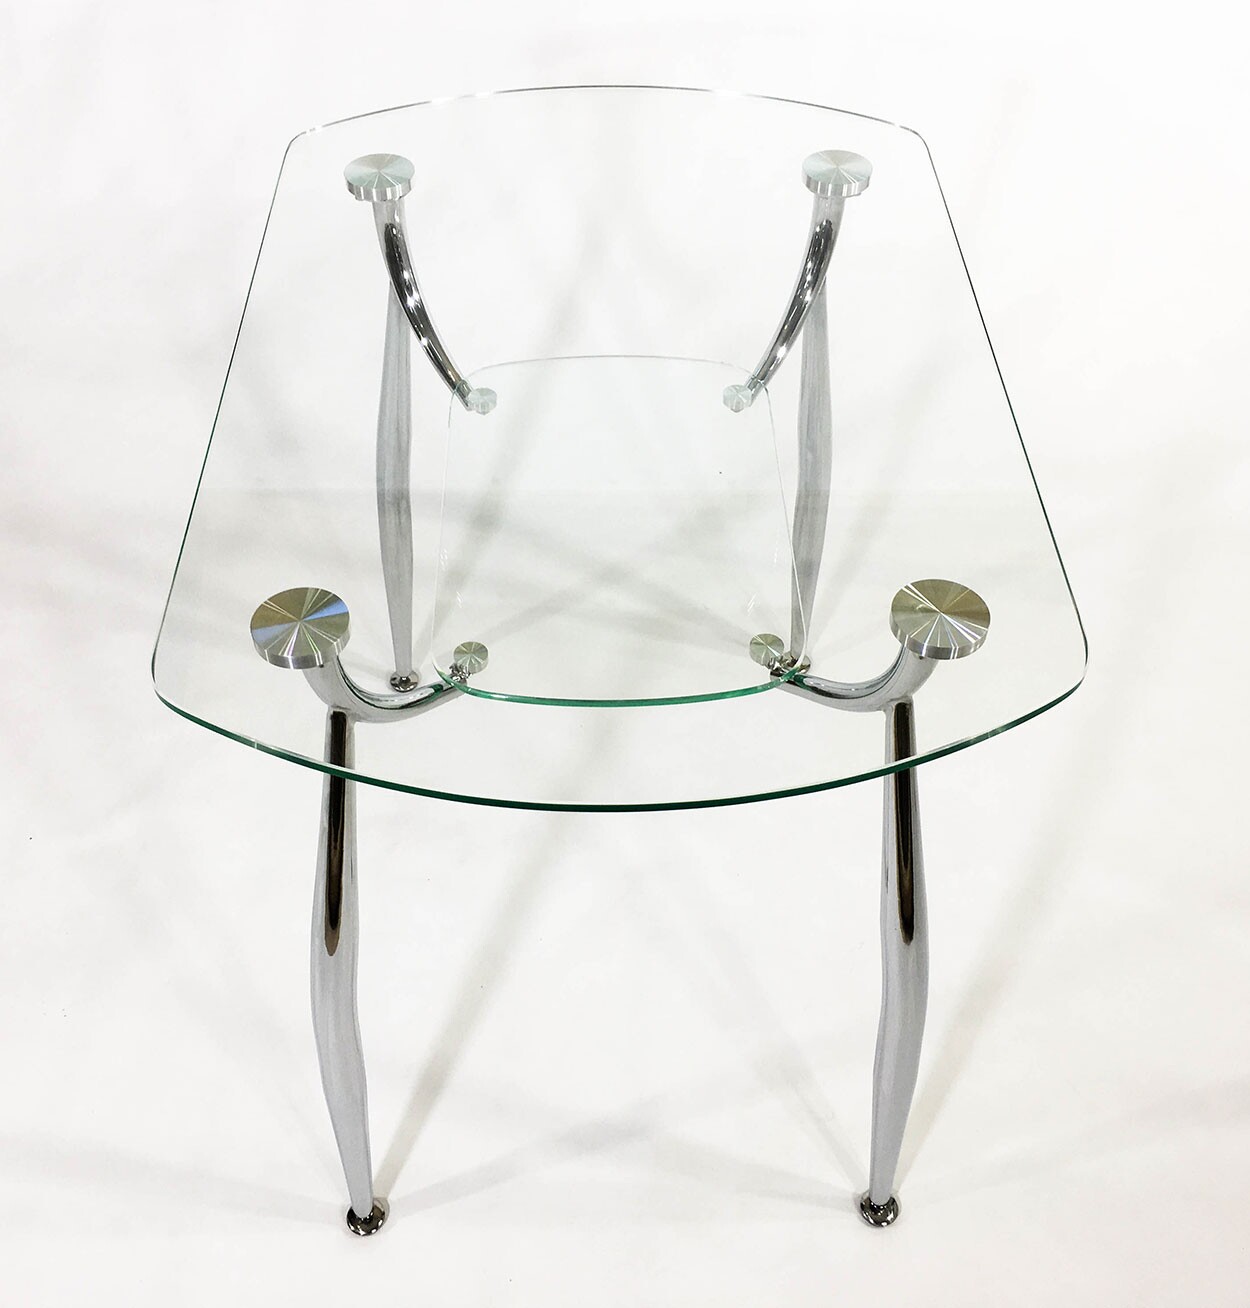 Прямоугольный стеклянный стол Вокал 32 прозрачный